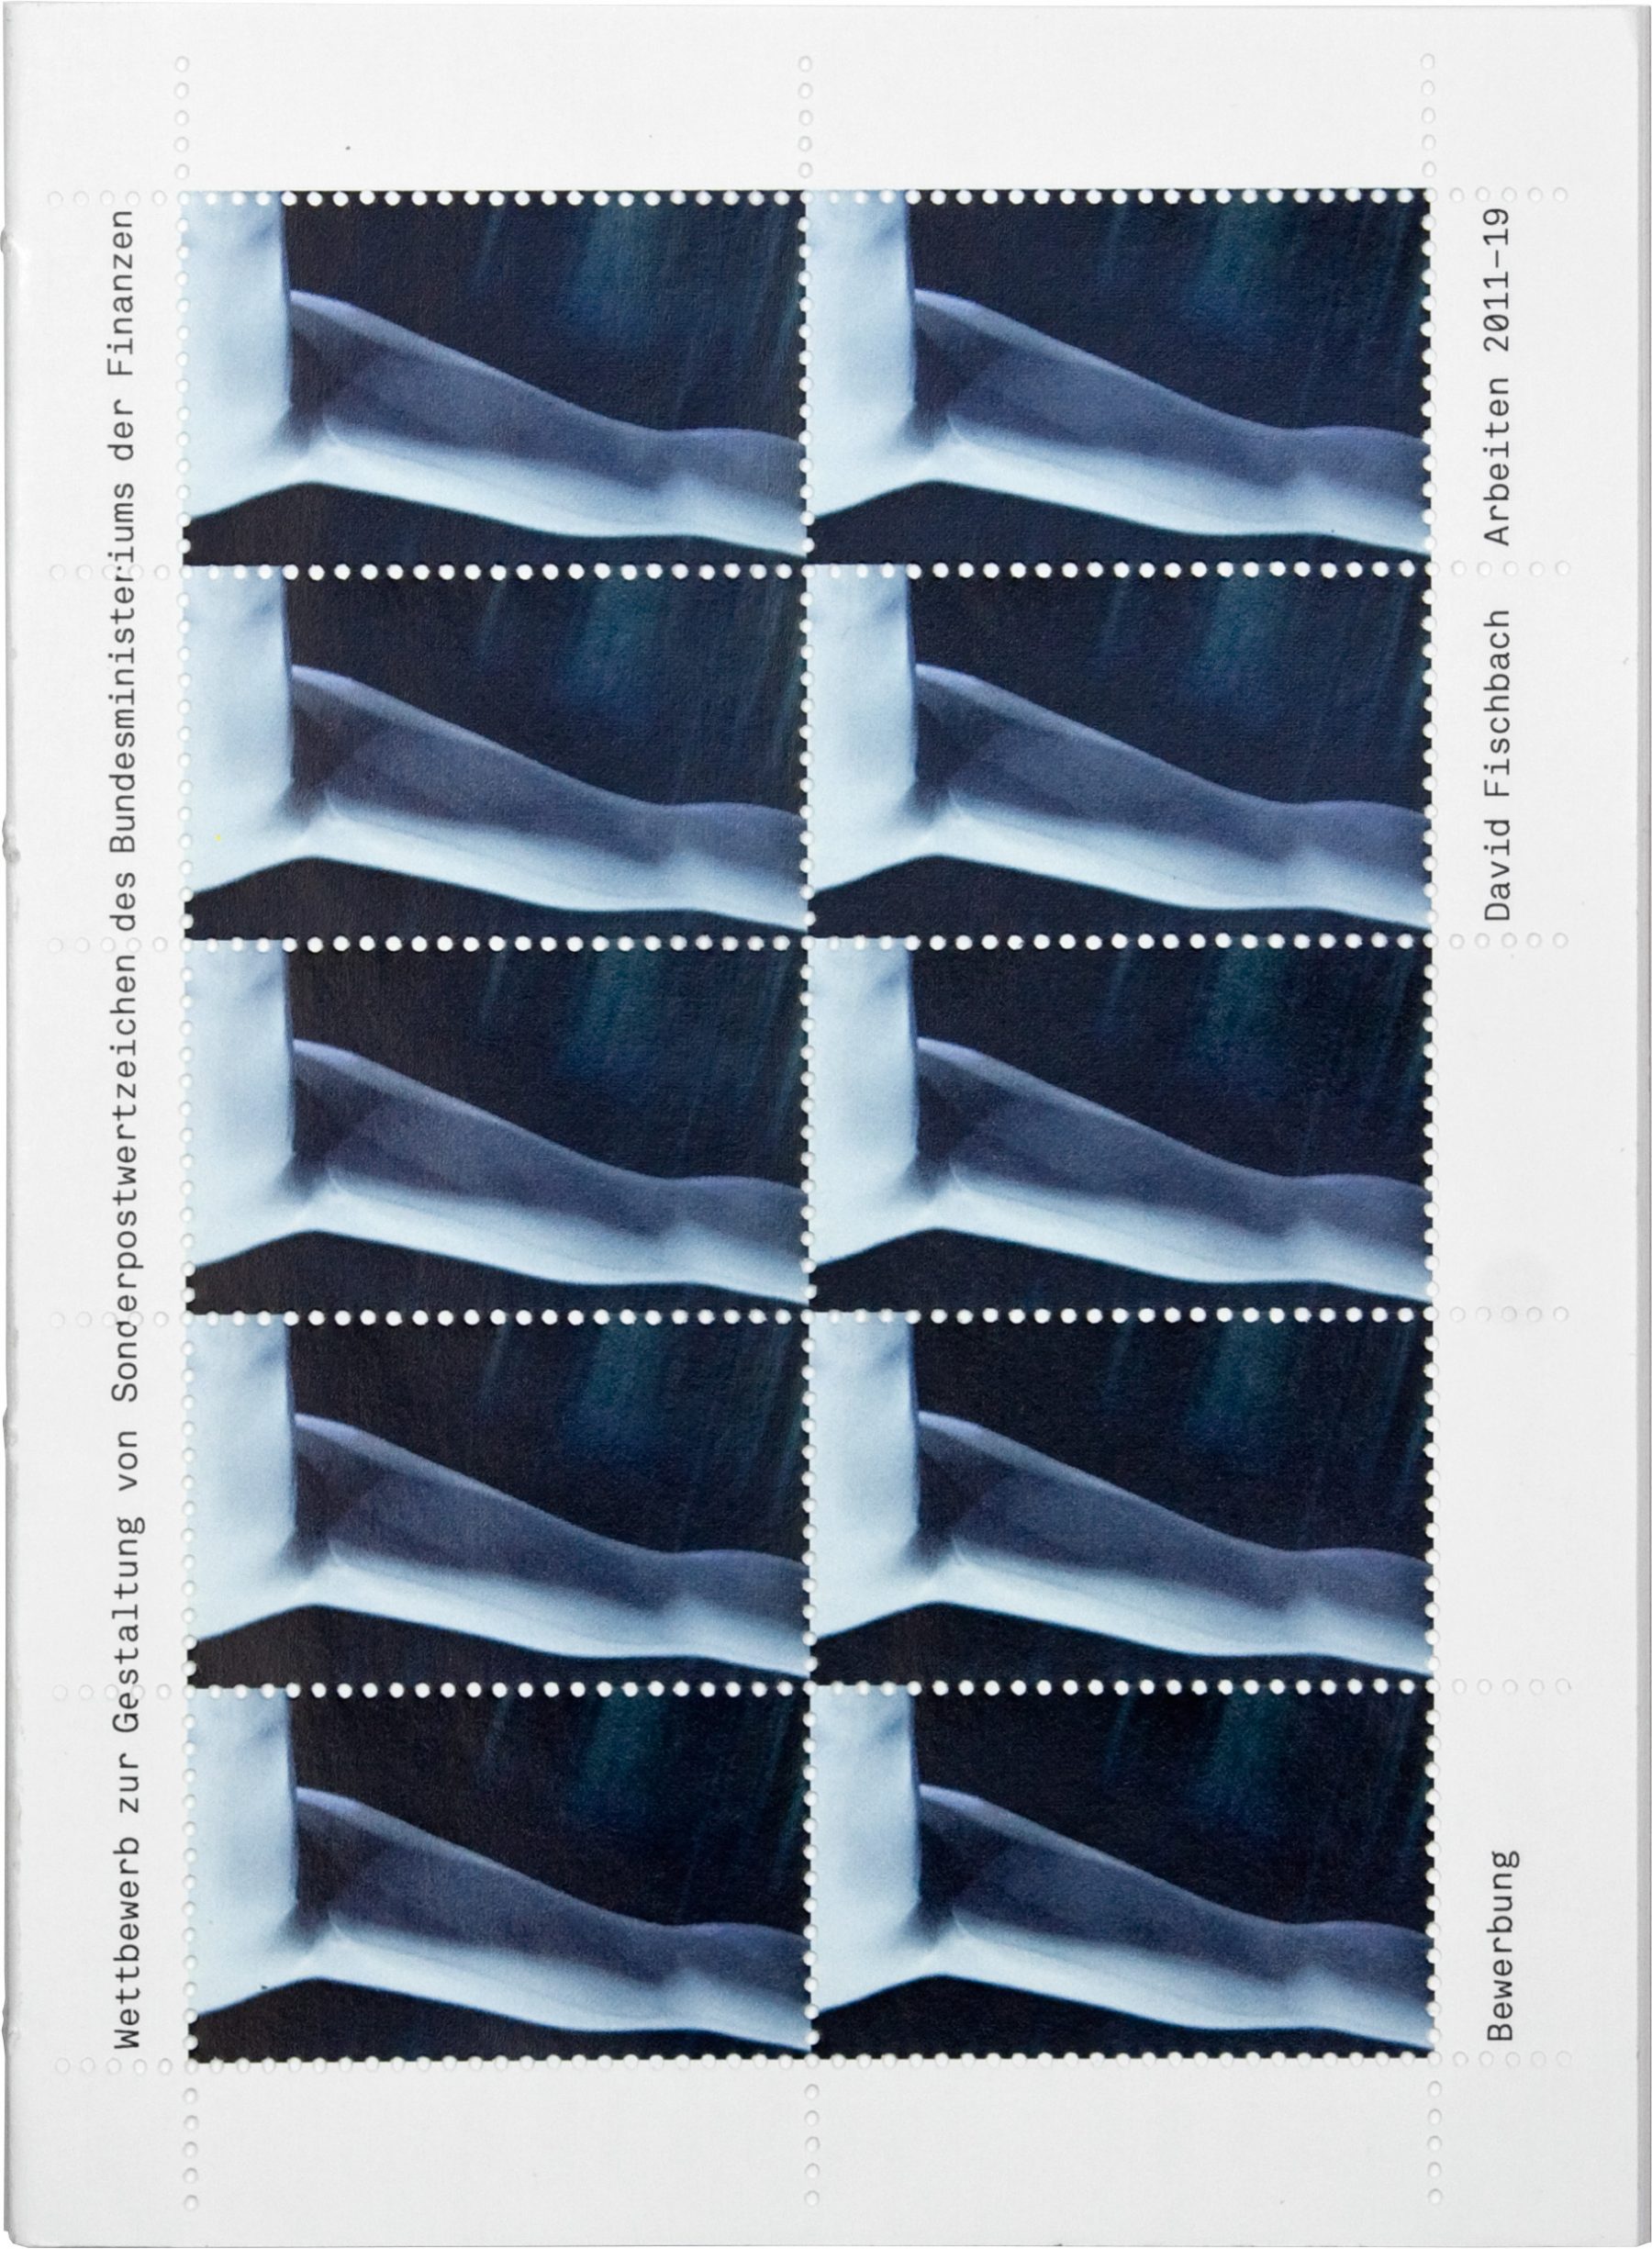 Wettbewerb zur Gestaltung von Sonderpostwertzeichen, Cover, David Fischbach